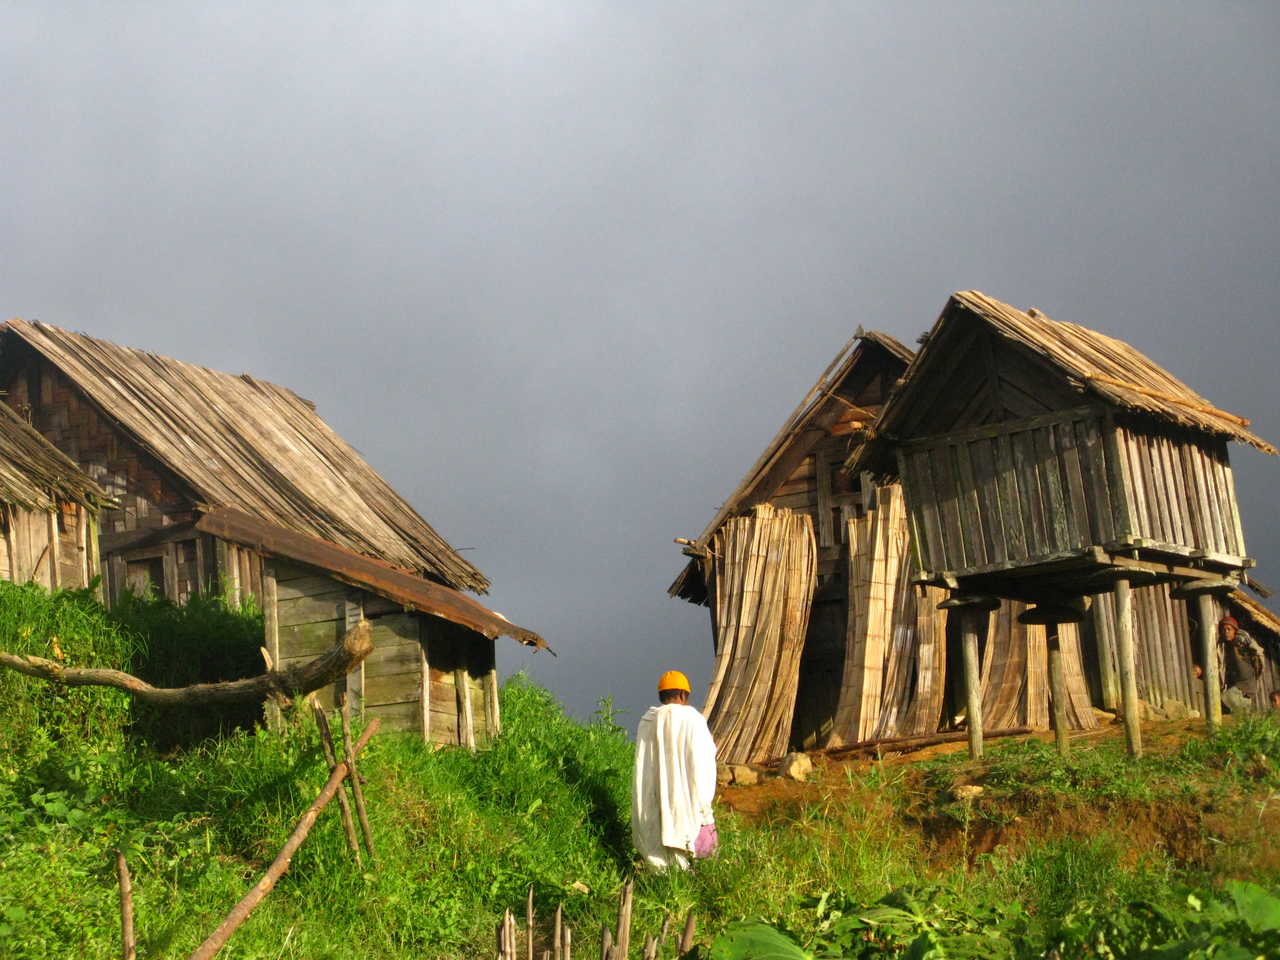 Image Aventures en Chaland et Hautes Terres malgaches d'Ouest en Est